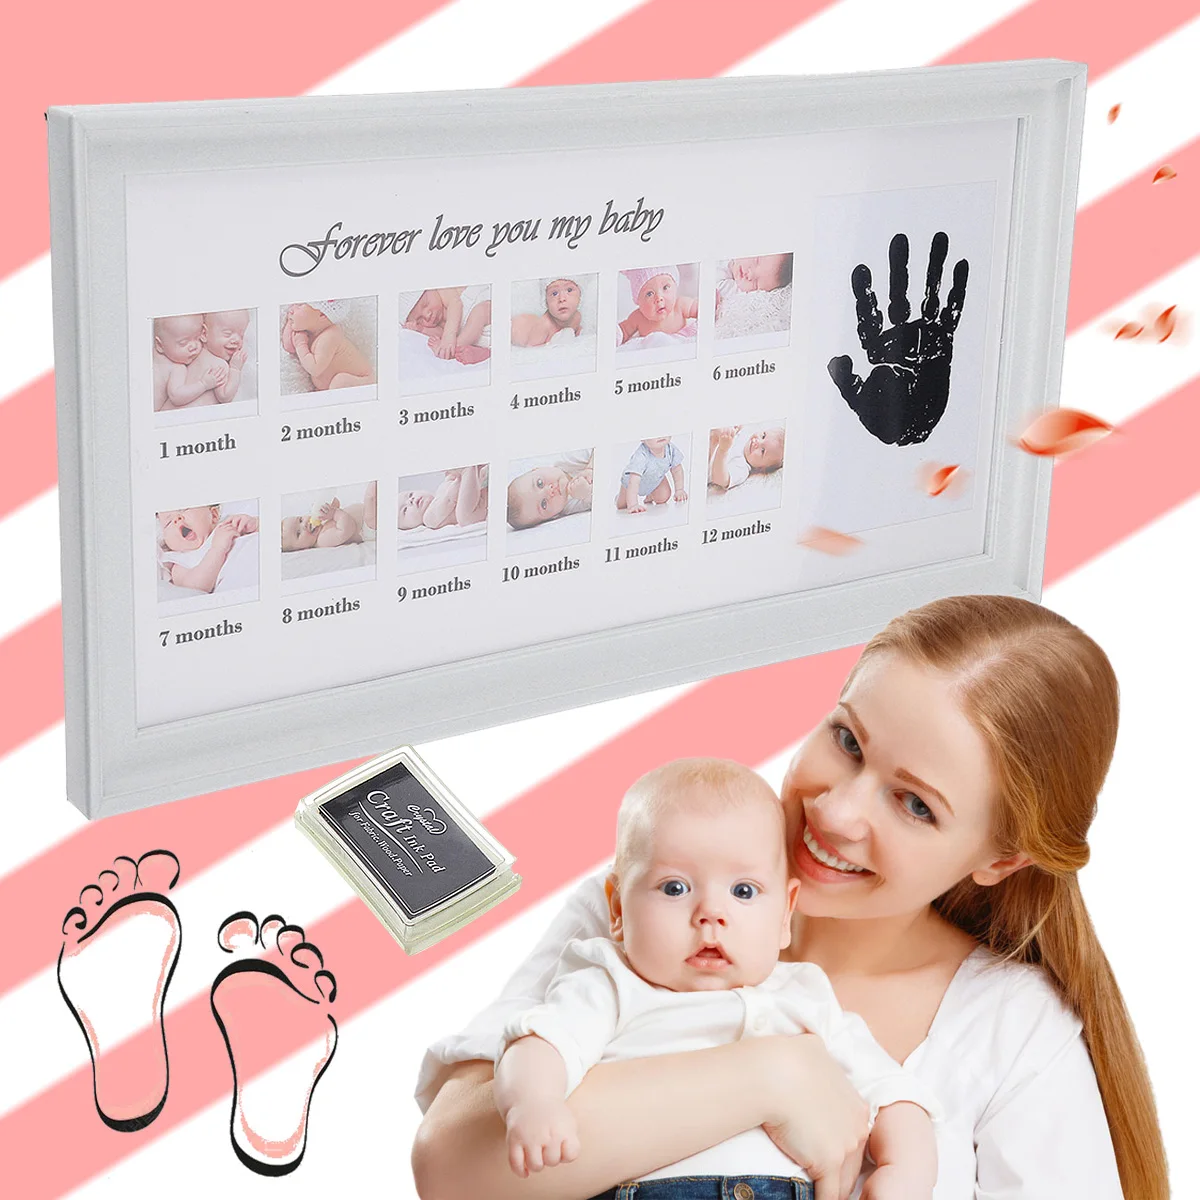 Marco de fotos de bebé lindo DIY estampado a mano o huella de 12 meses marco de fotos de bebé niño niña mi 1 año blanco tinta artesanal azul rosa